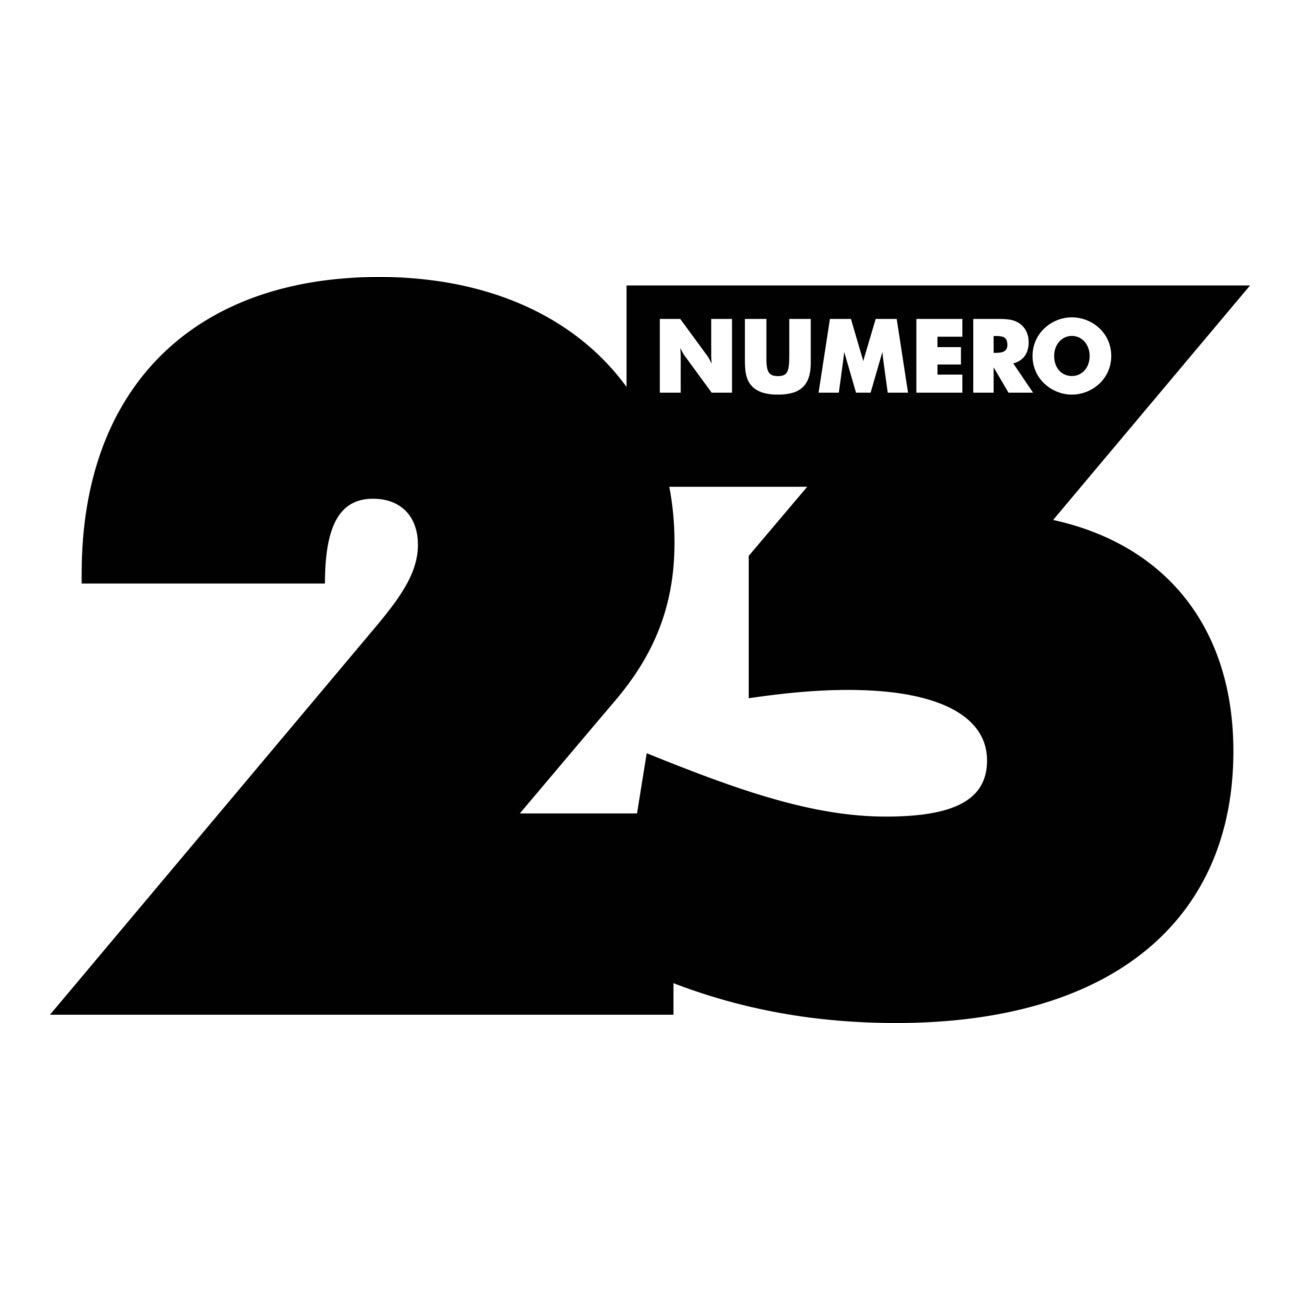 Numéro 23